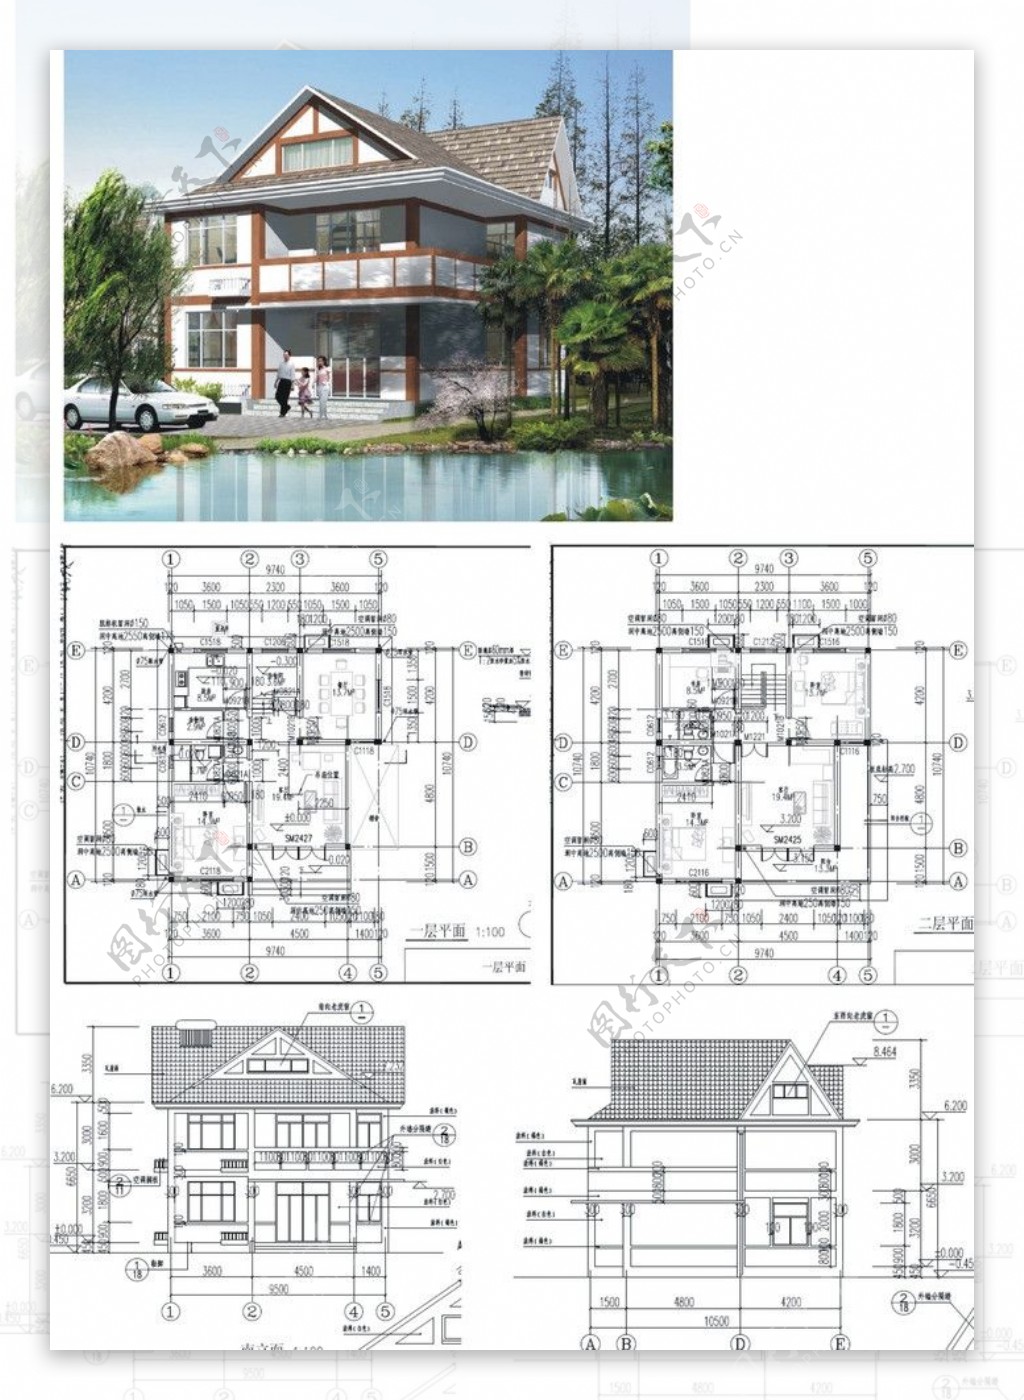 上海市建委推荐别墅方案图片